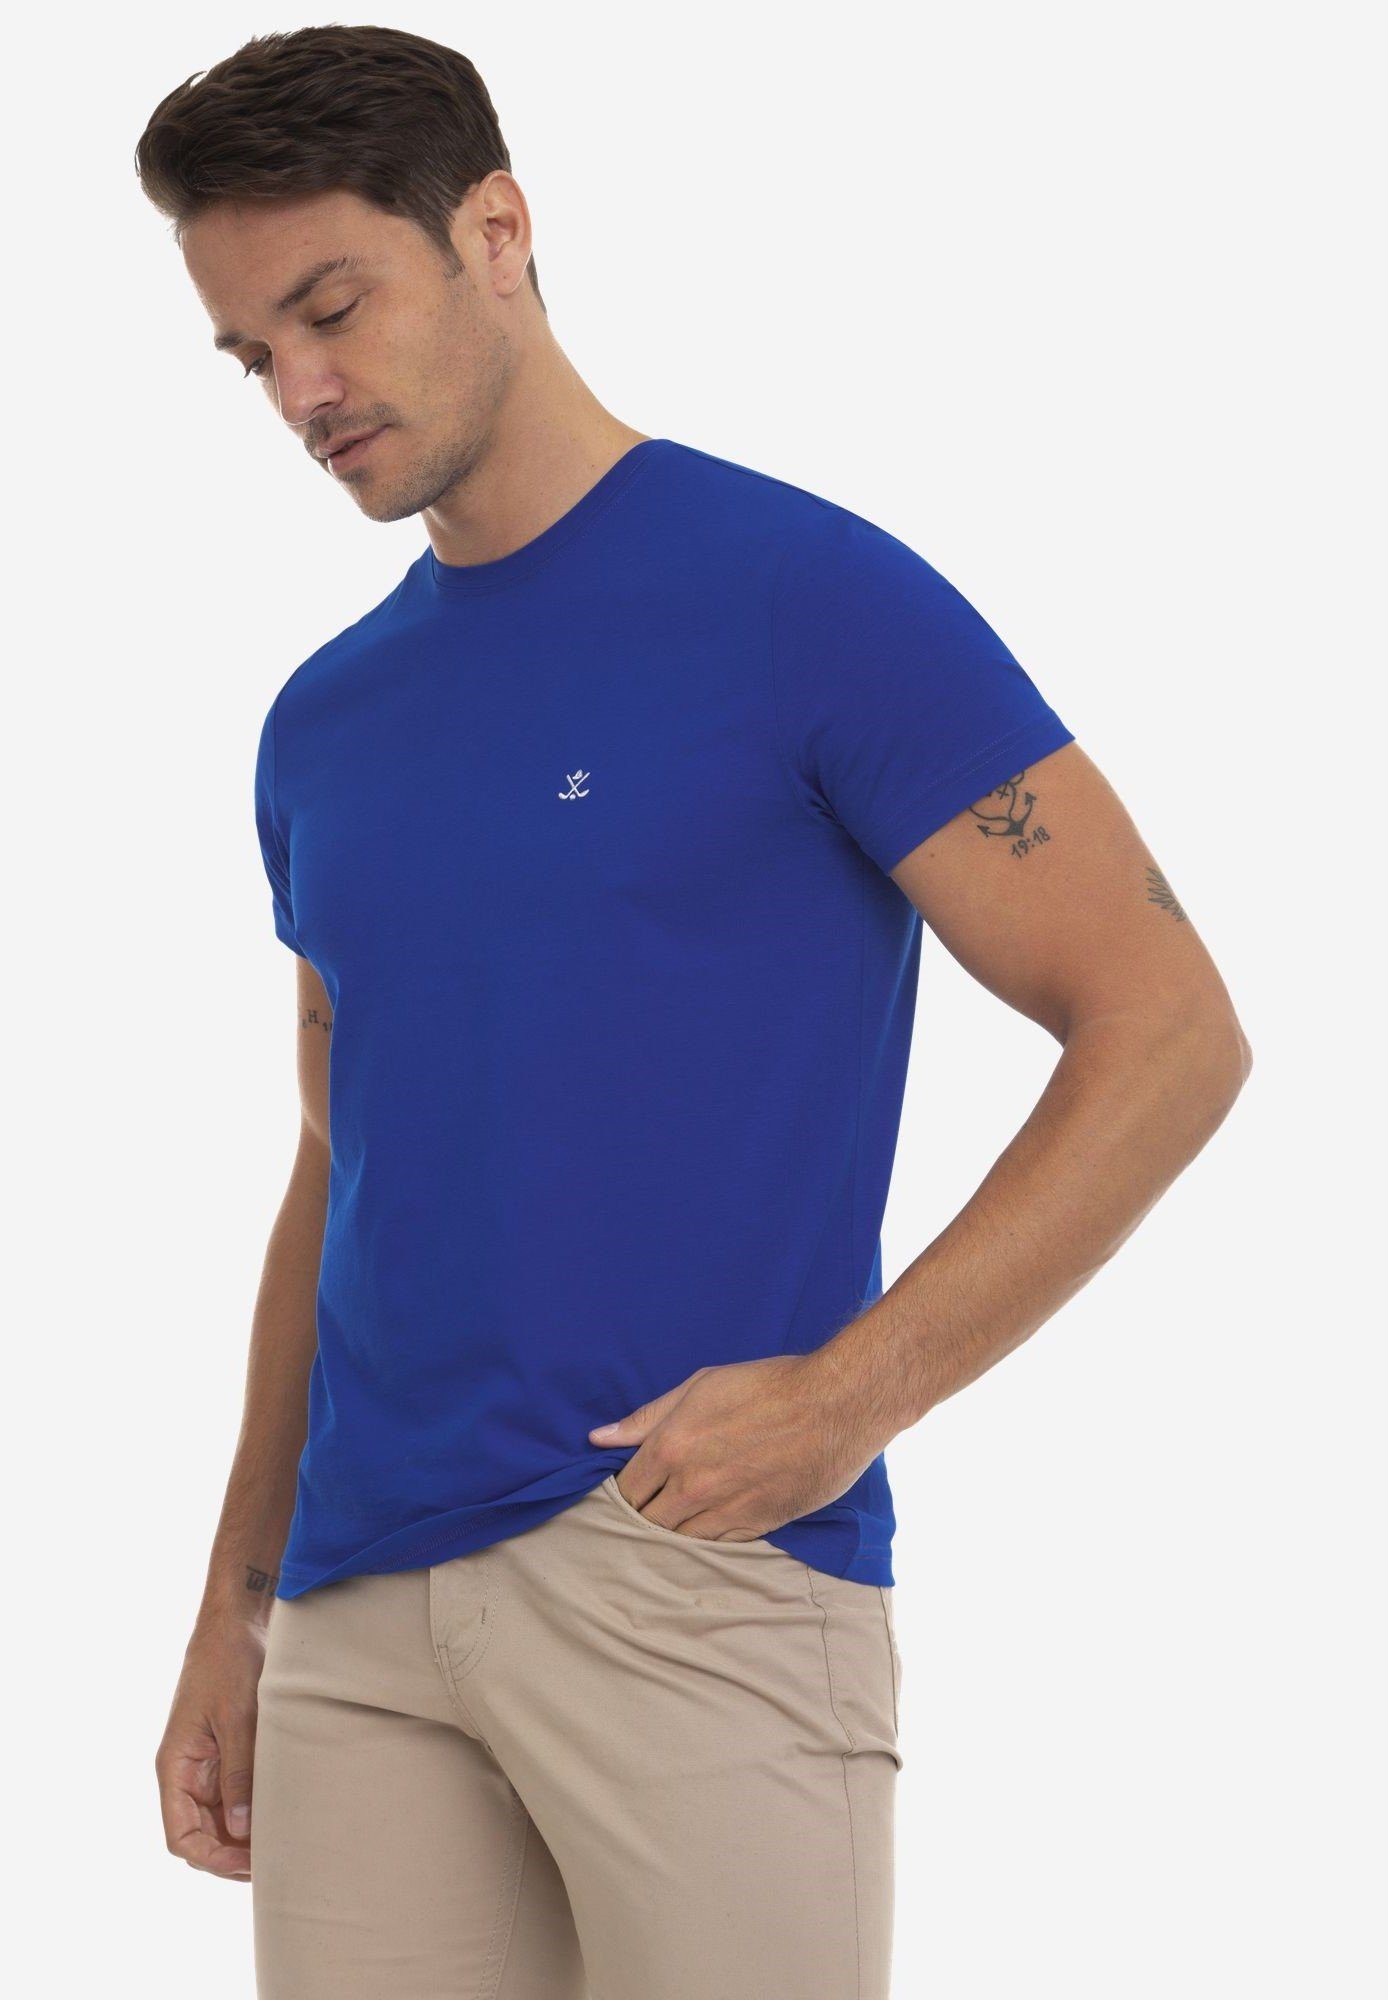 Jaime Royal Sir Tailor Blue Raymond T-Shirt